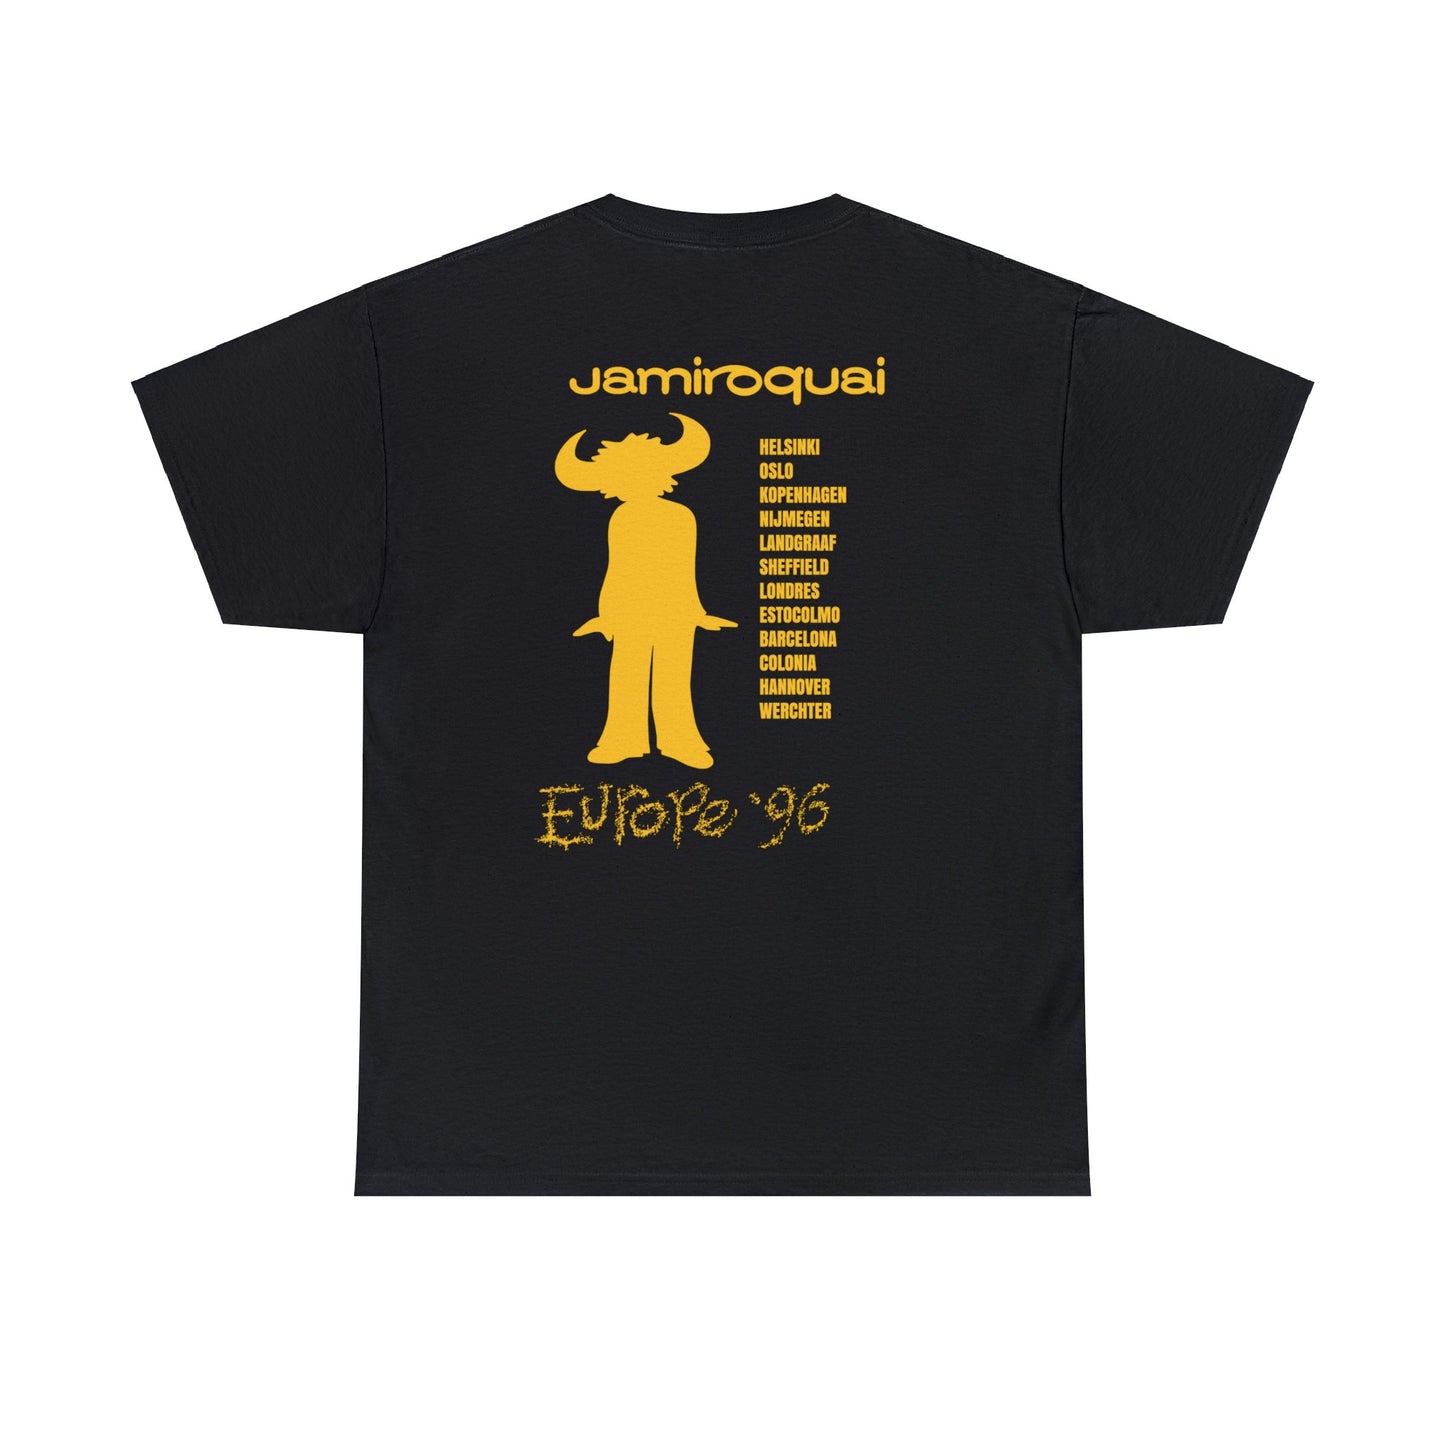 Jamiroquai Tour 1996 T-shirt for Sale